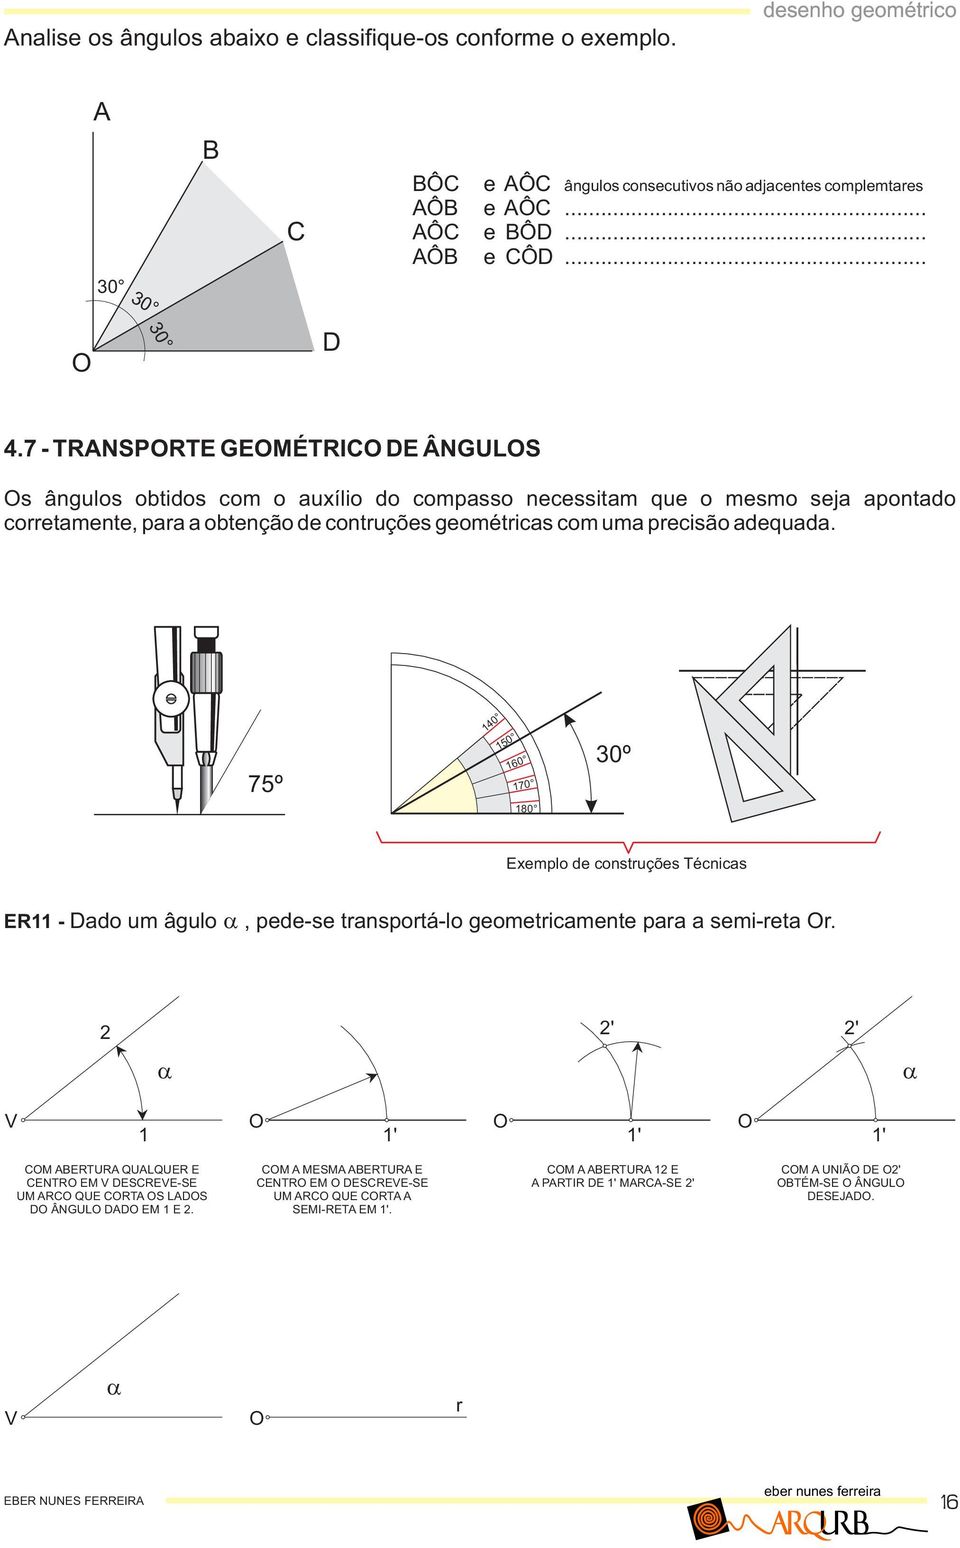 dequd. 75º 40 50 60 70 80 0º Eemplo de constuções Técnics ER - do um âgulo, pede-se tnspotá-lo geometicmente p semi-et.